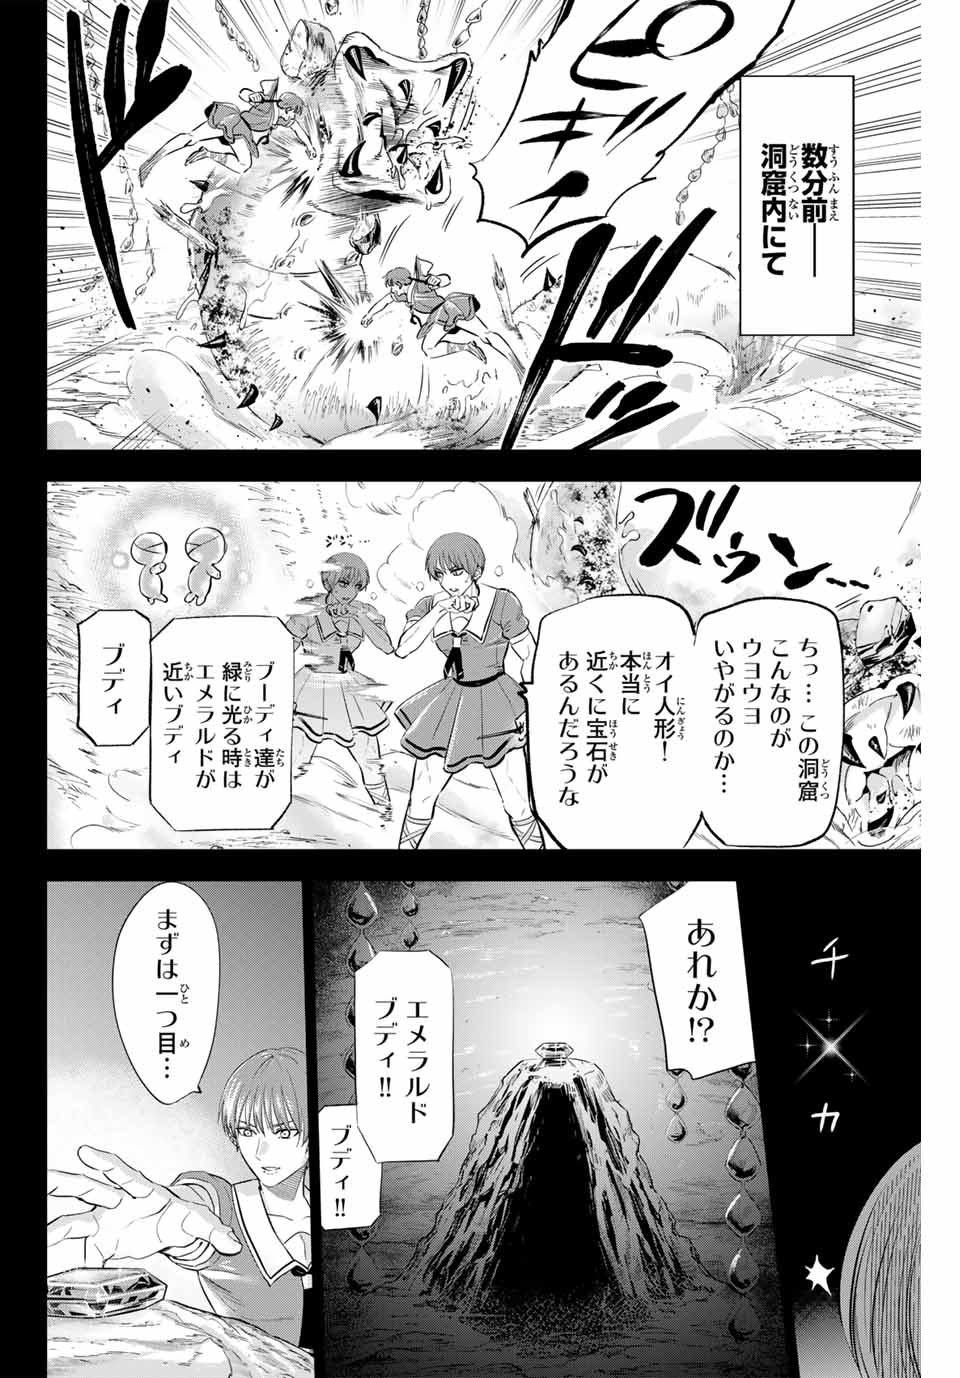 Kuroneko to Majo no Kyoushitsu - Chapter 47 - Page 2